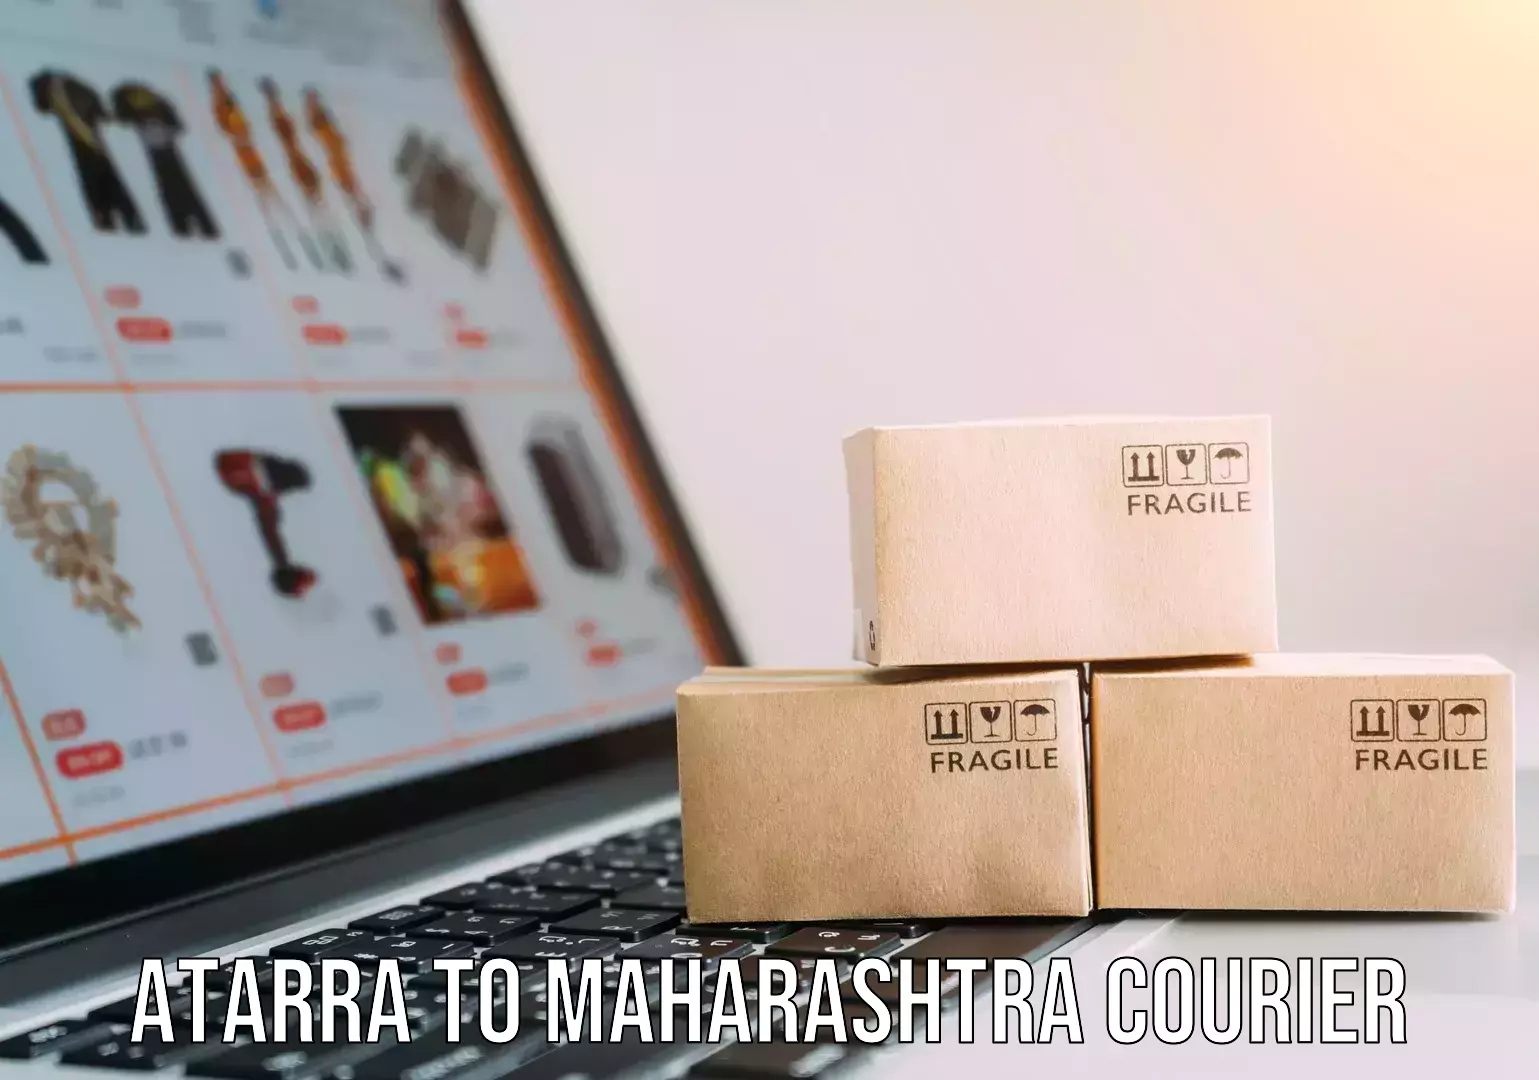 User-friendly courier app Atarra to Maharashtra